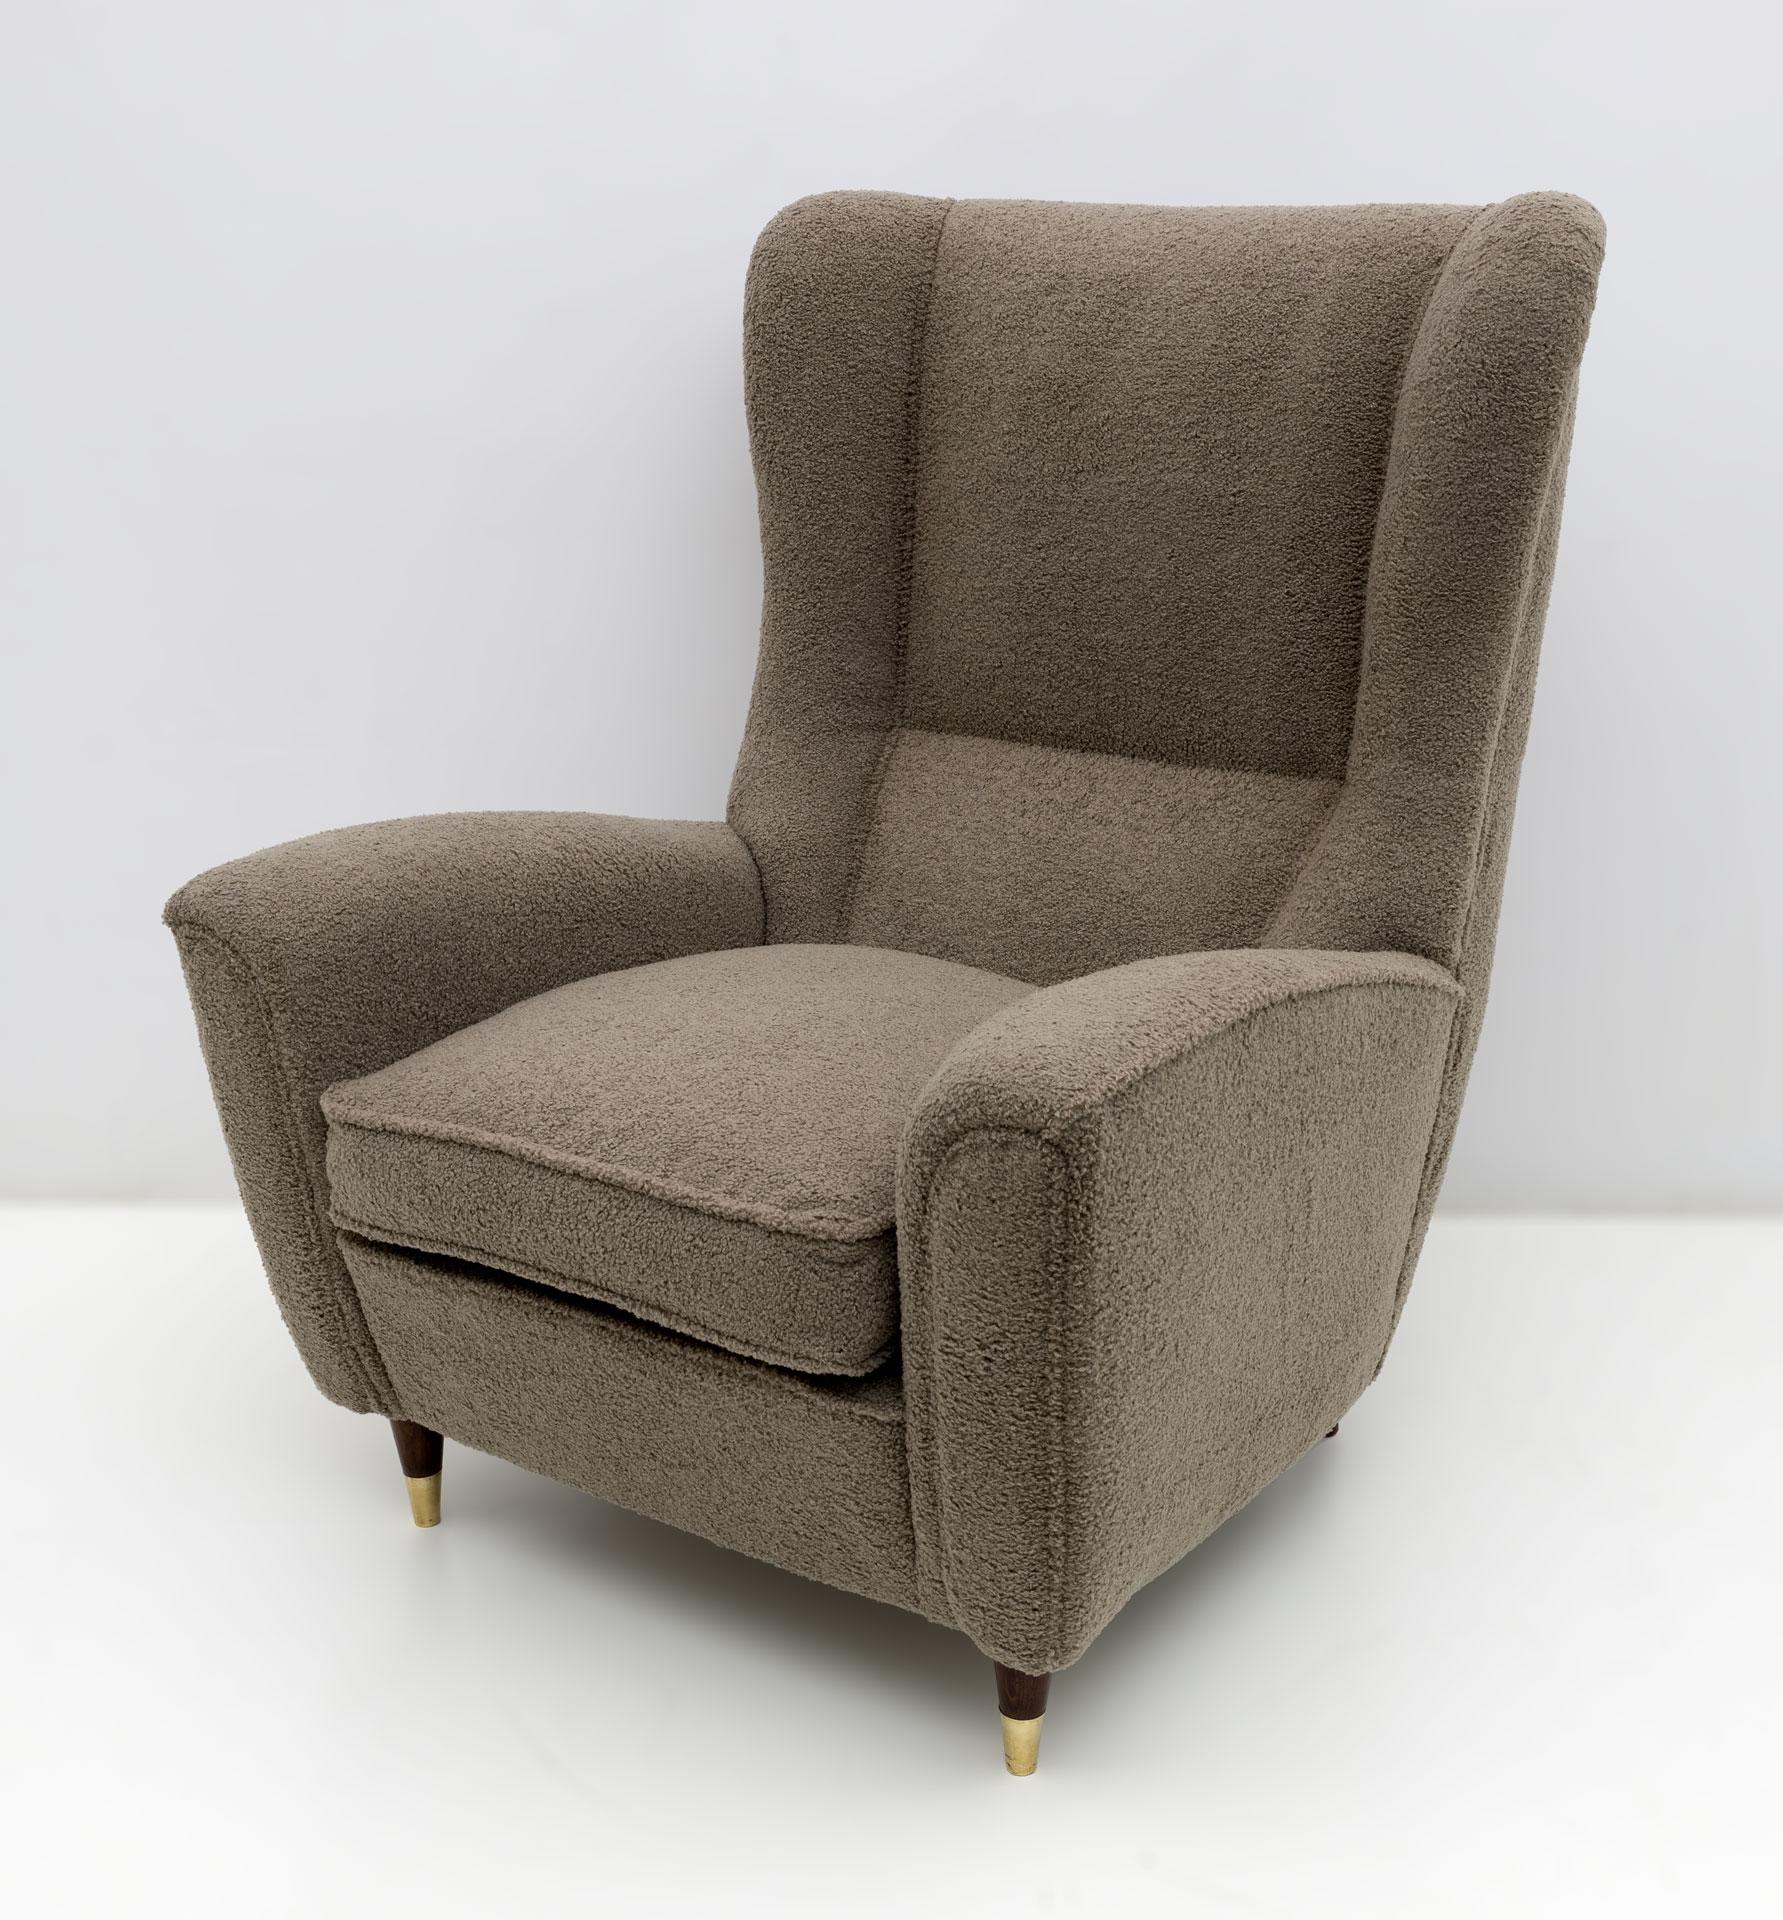 Dieser Sessel im Stil von Gio Ponti wurde von der berühmten italienischen Firma Isa aus Bergamo hergestellt, mit der Gio Ponti mehrere Jahre lang zusammenarbeitete. Hochlehnig, sehr imposant und bequem, gepolstert mit feinem Bouclé, ist dieser